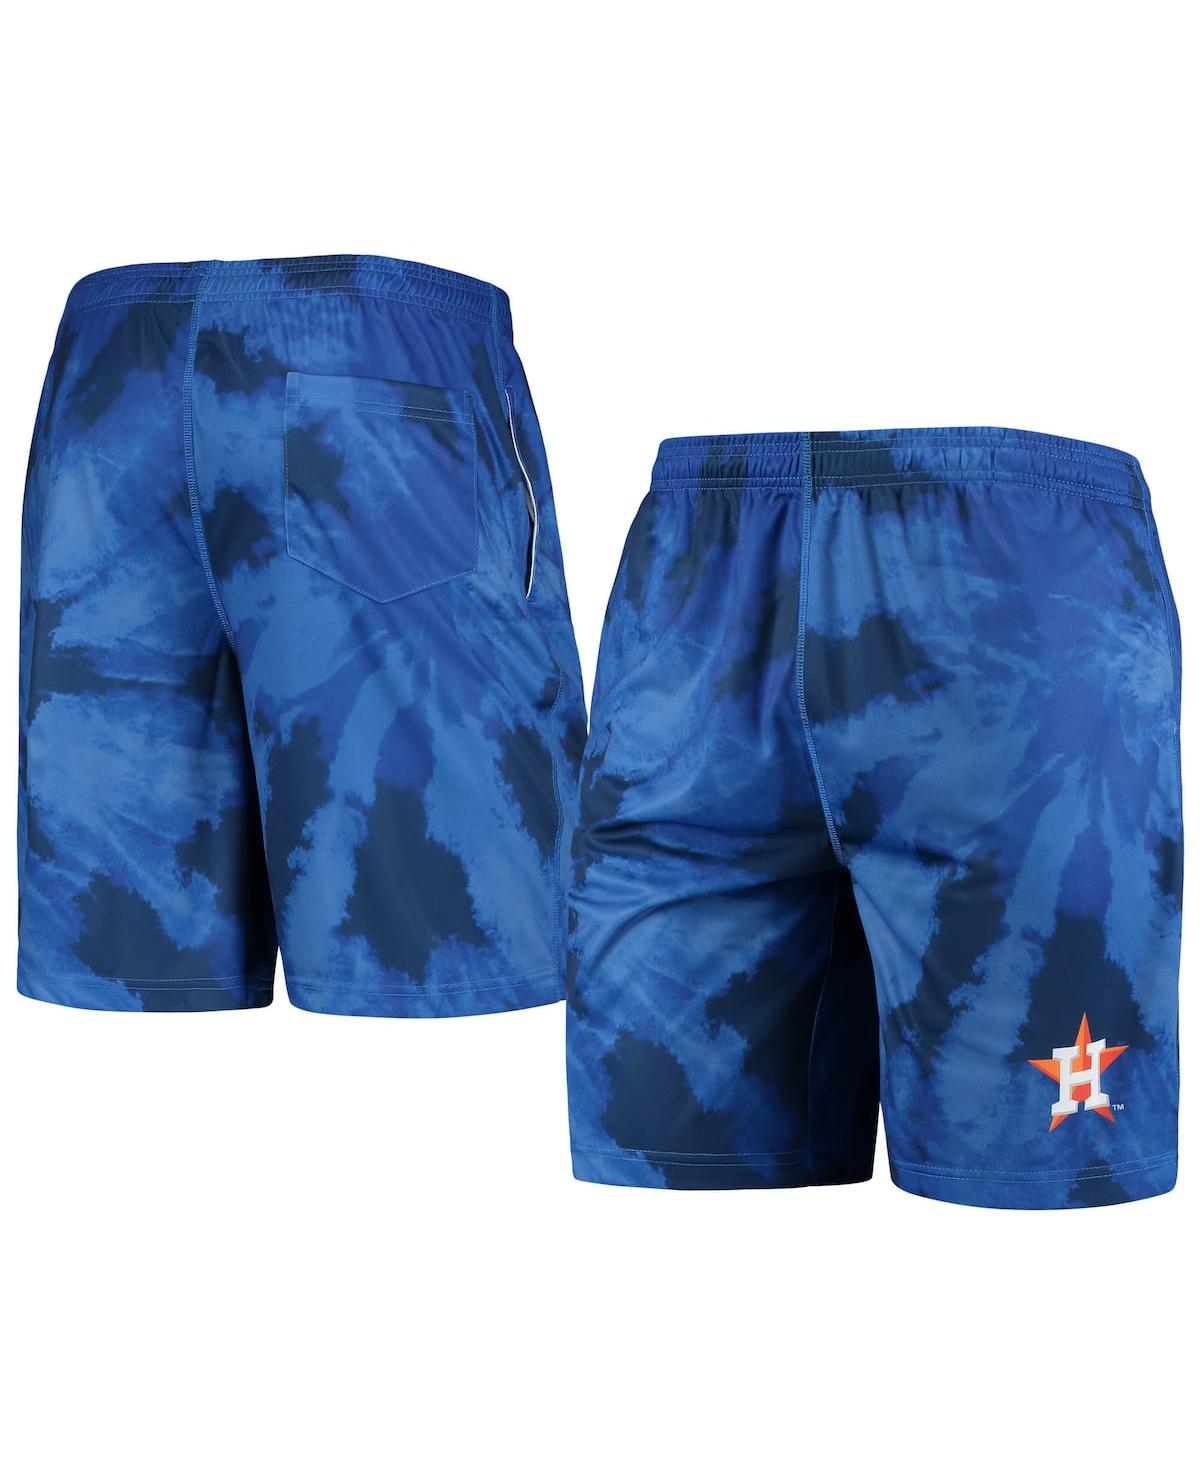 Men's Foco Navy Houston Astros Tie-Dye Training Shorts - Navy